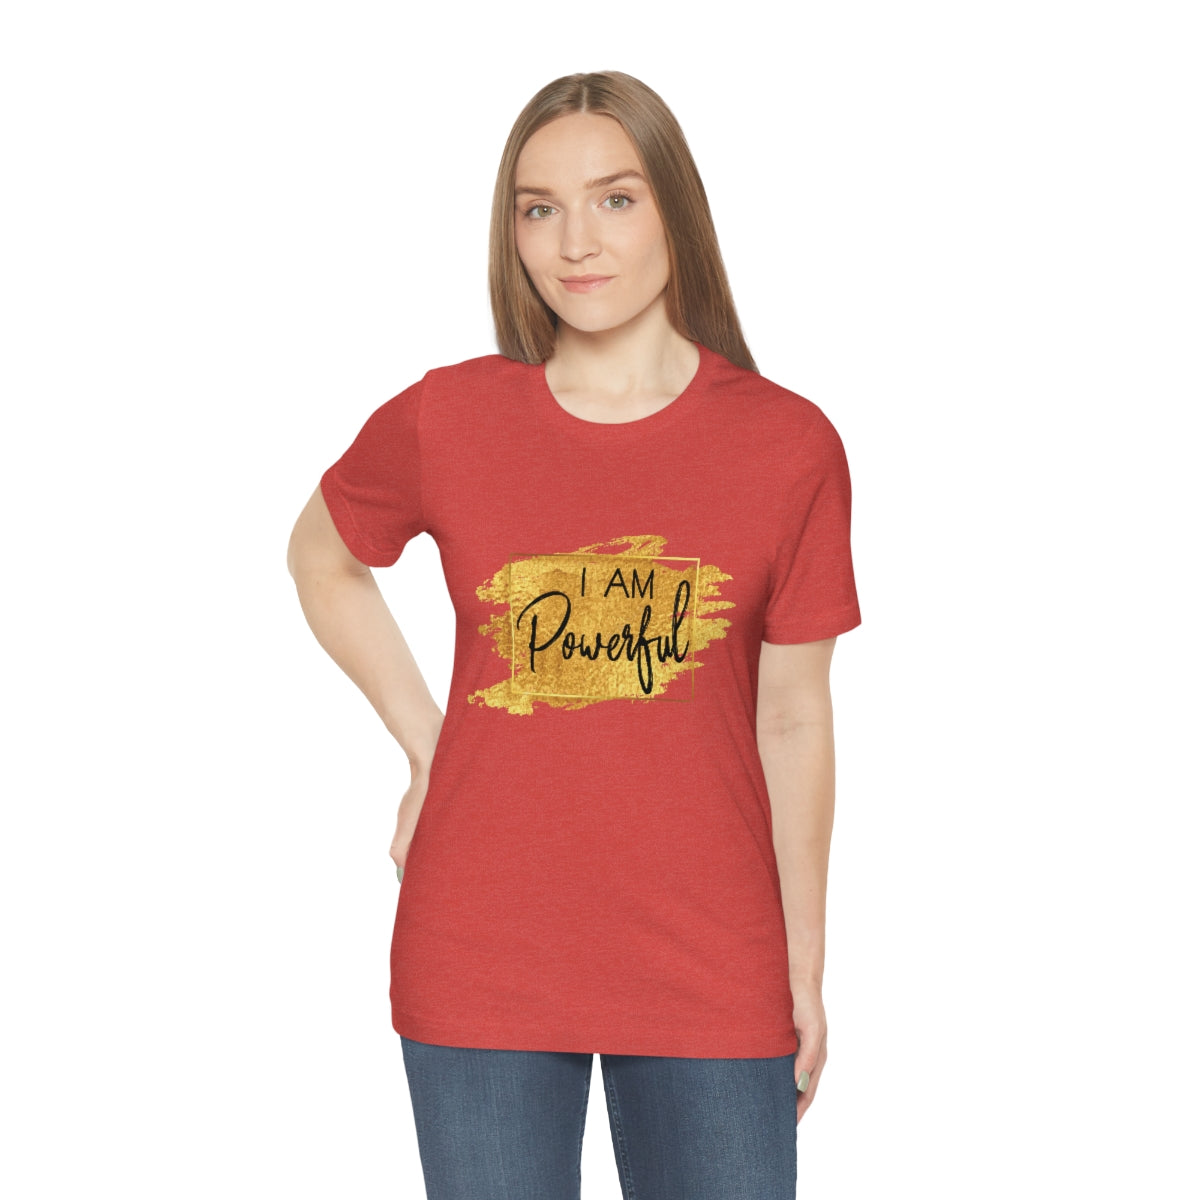 Affirmation Feminist Pro Choice T-Shirt Unisex Size, I am Powerful Printify